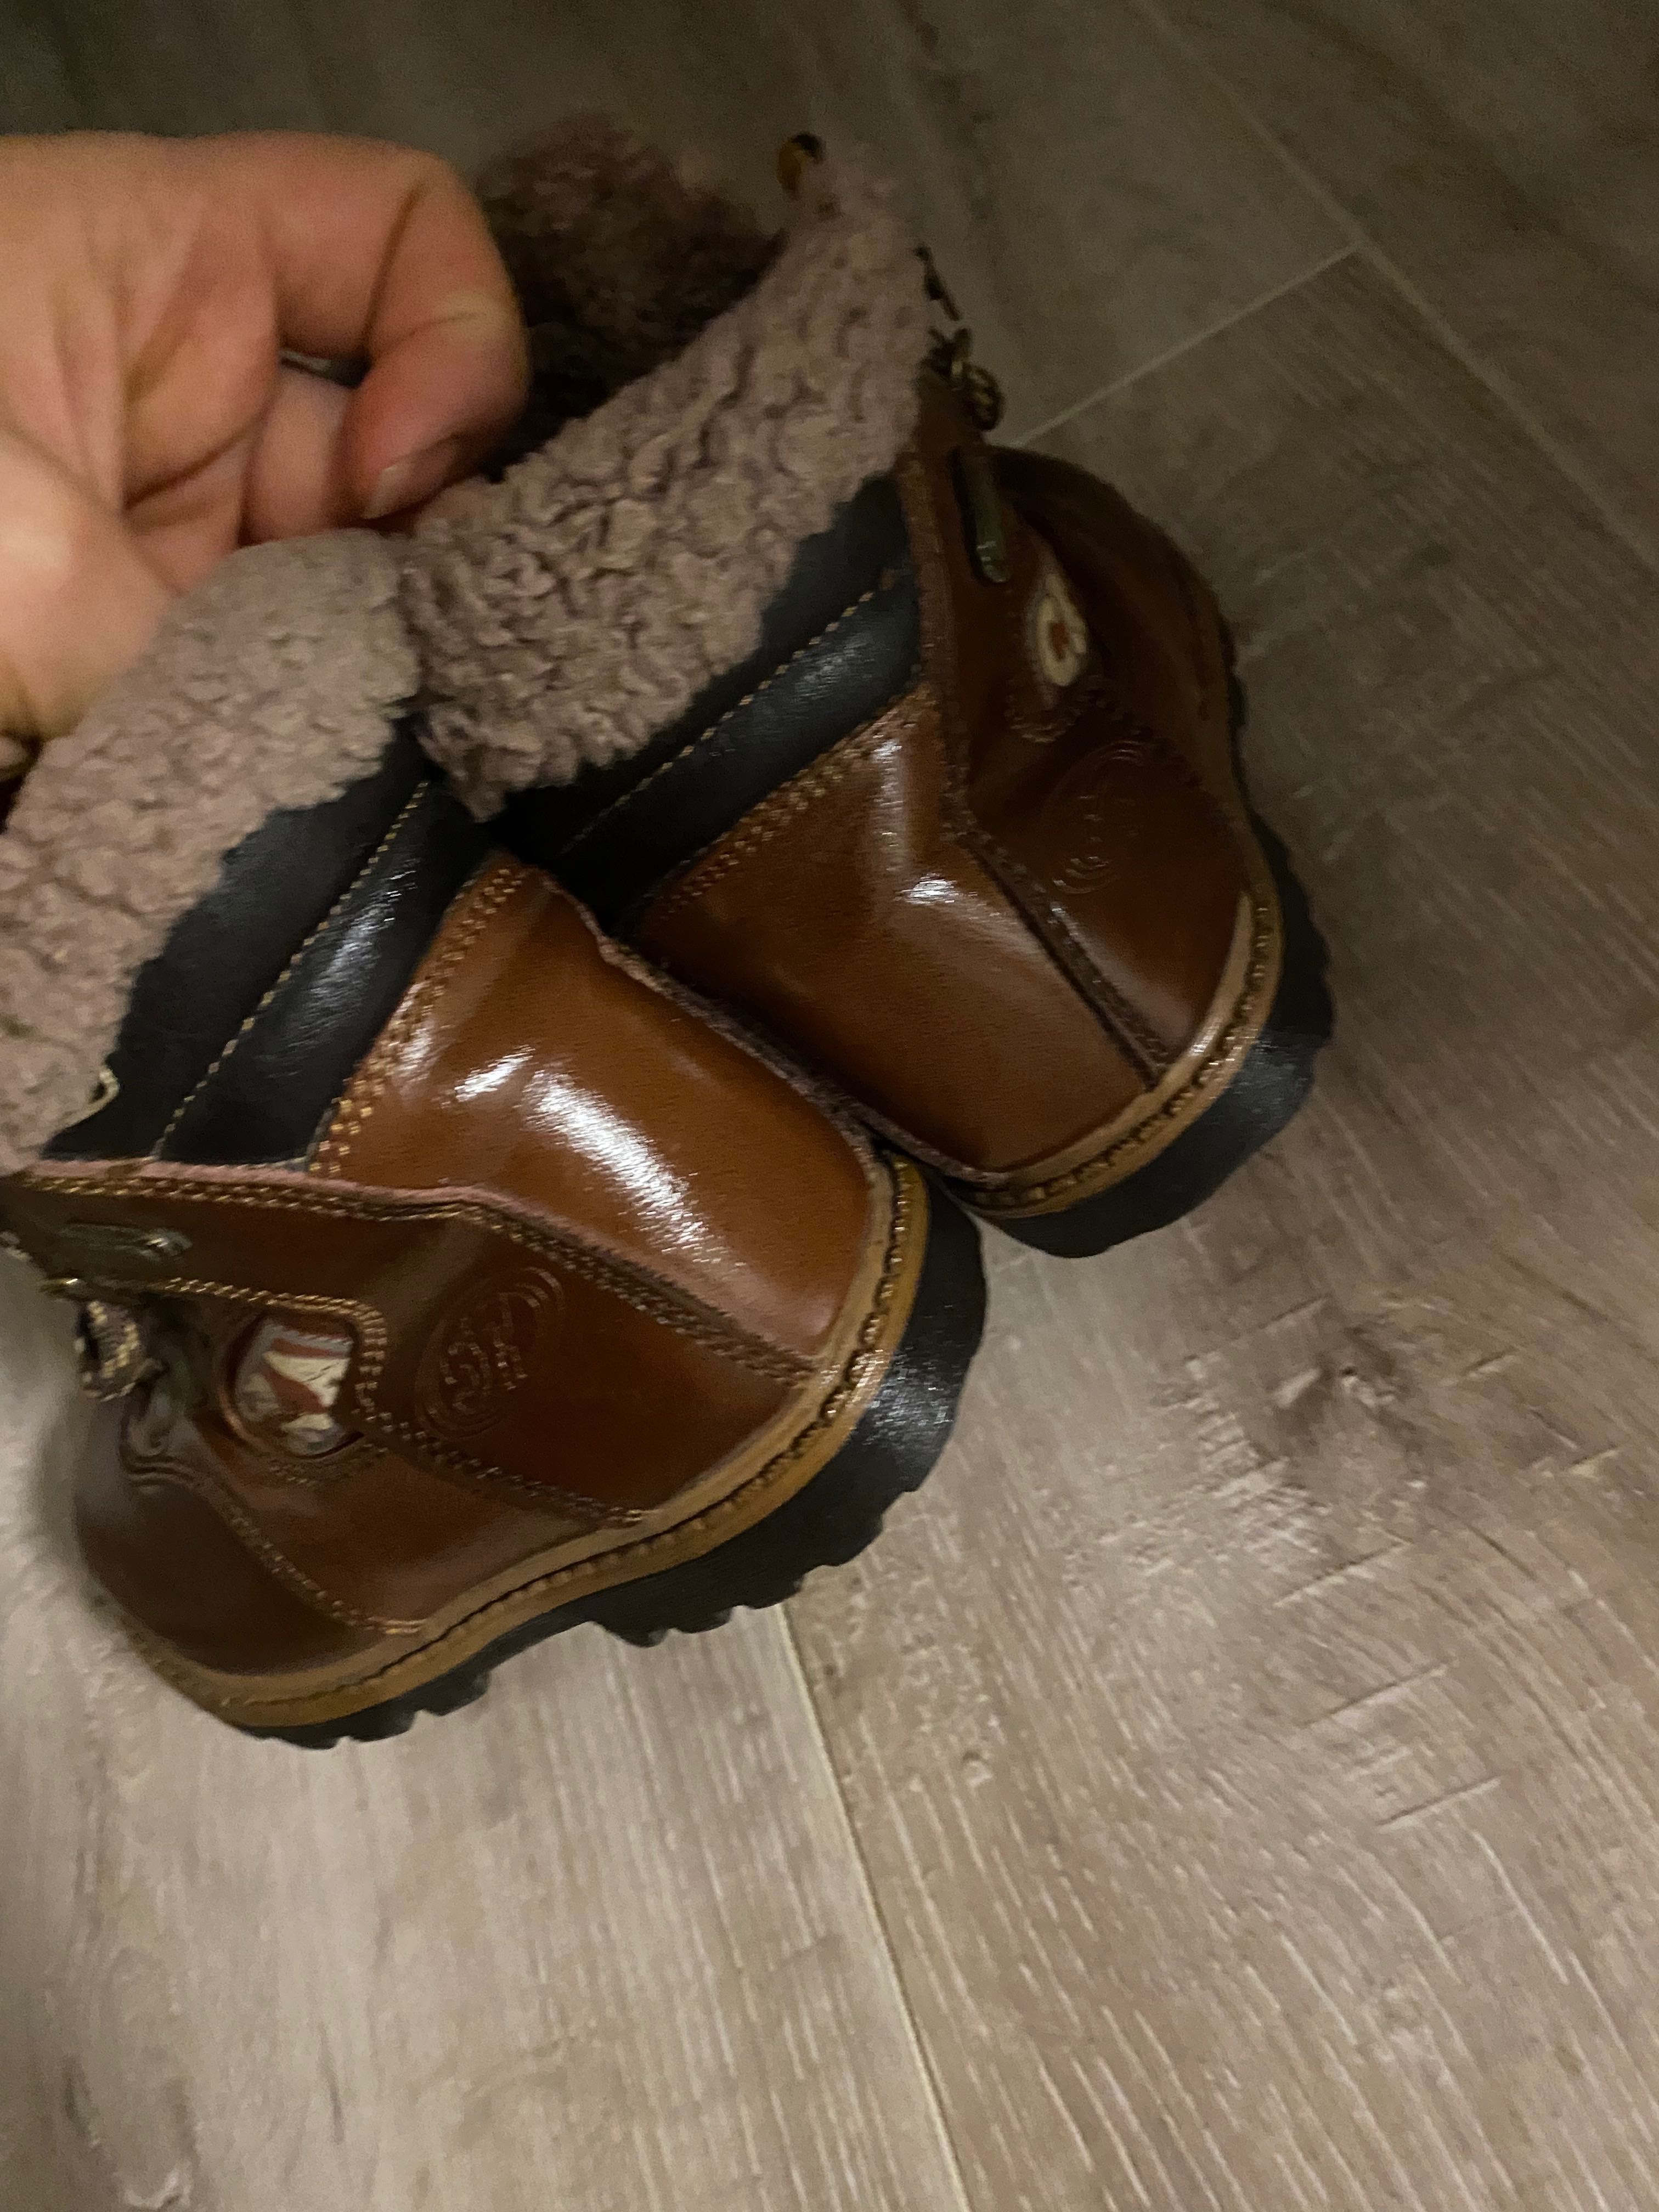 Ботинки/сапоги зимние(22 размер) кожа